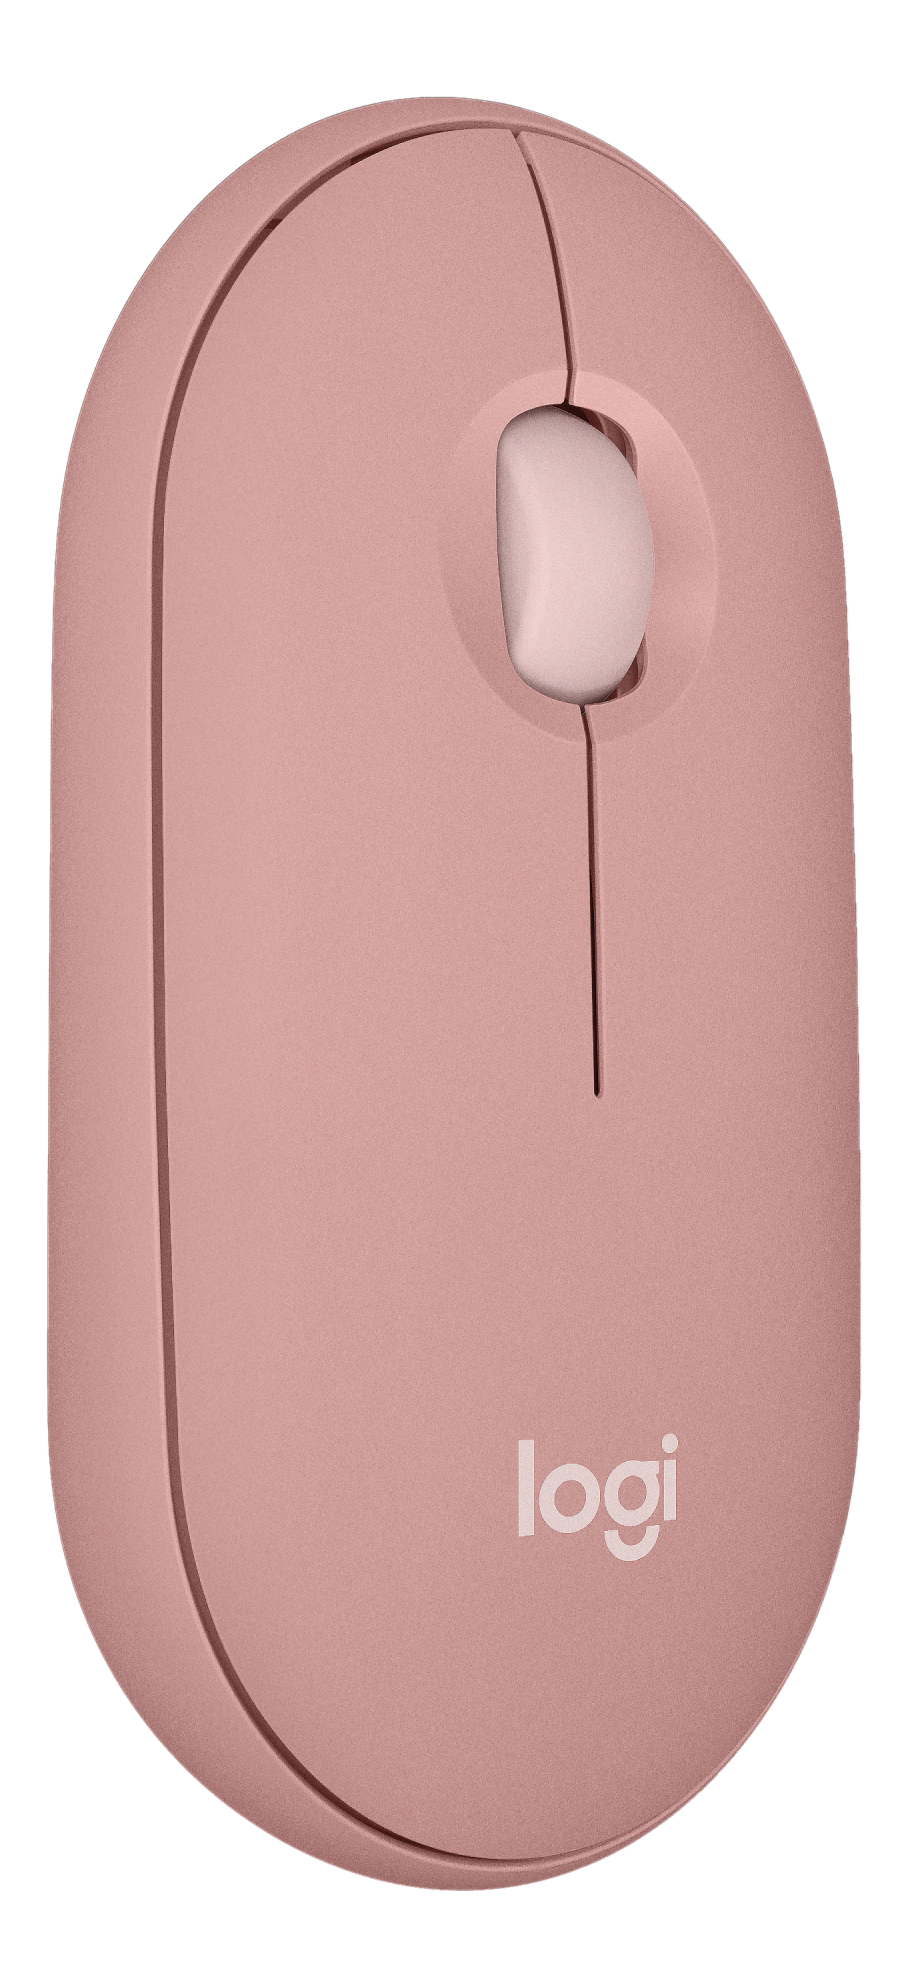 LOGITECH Pebble Mouse 2 M350s - Mouse bluetooth (rosé)